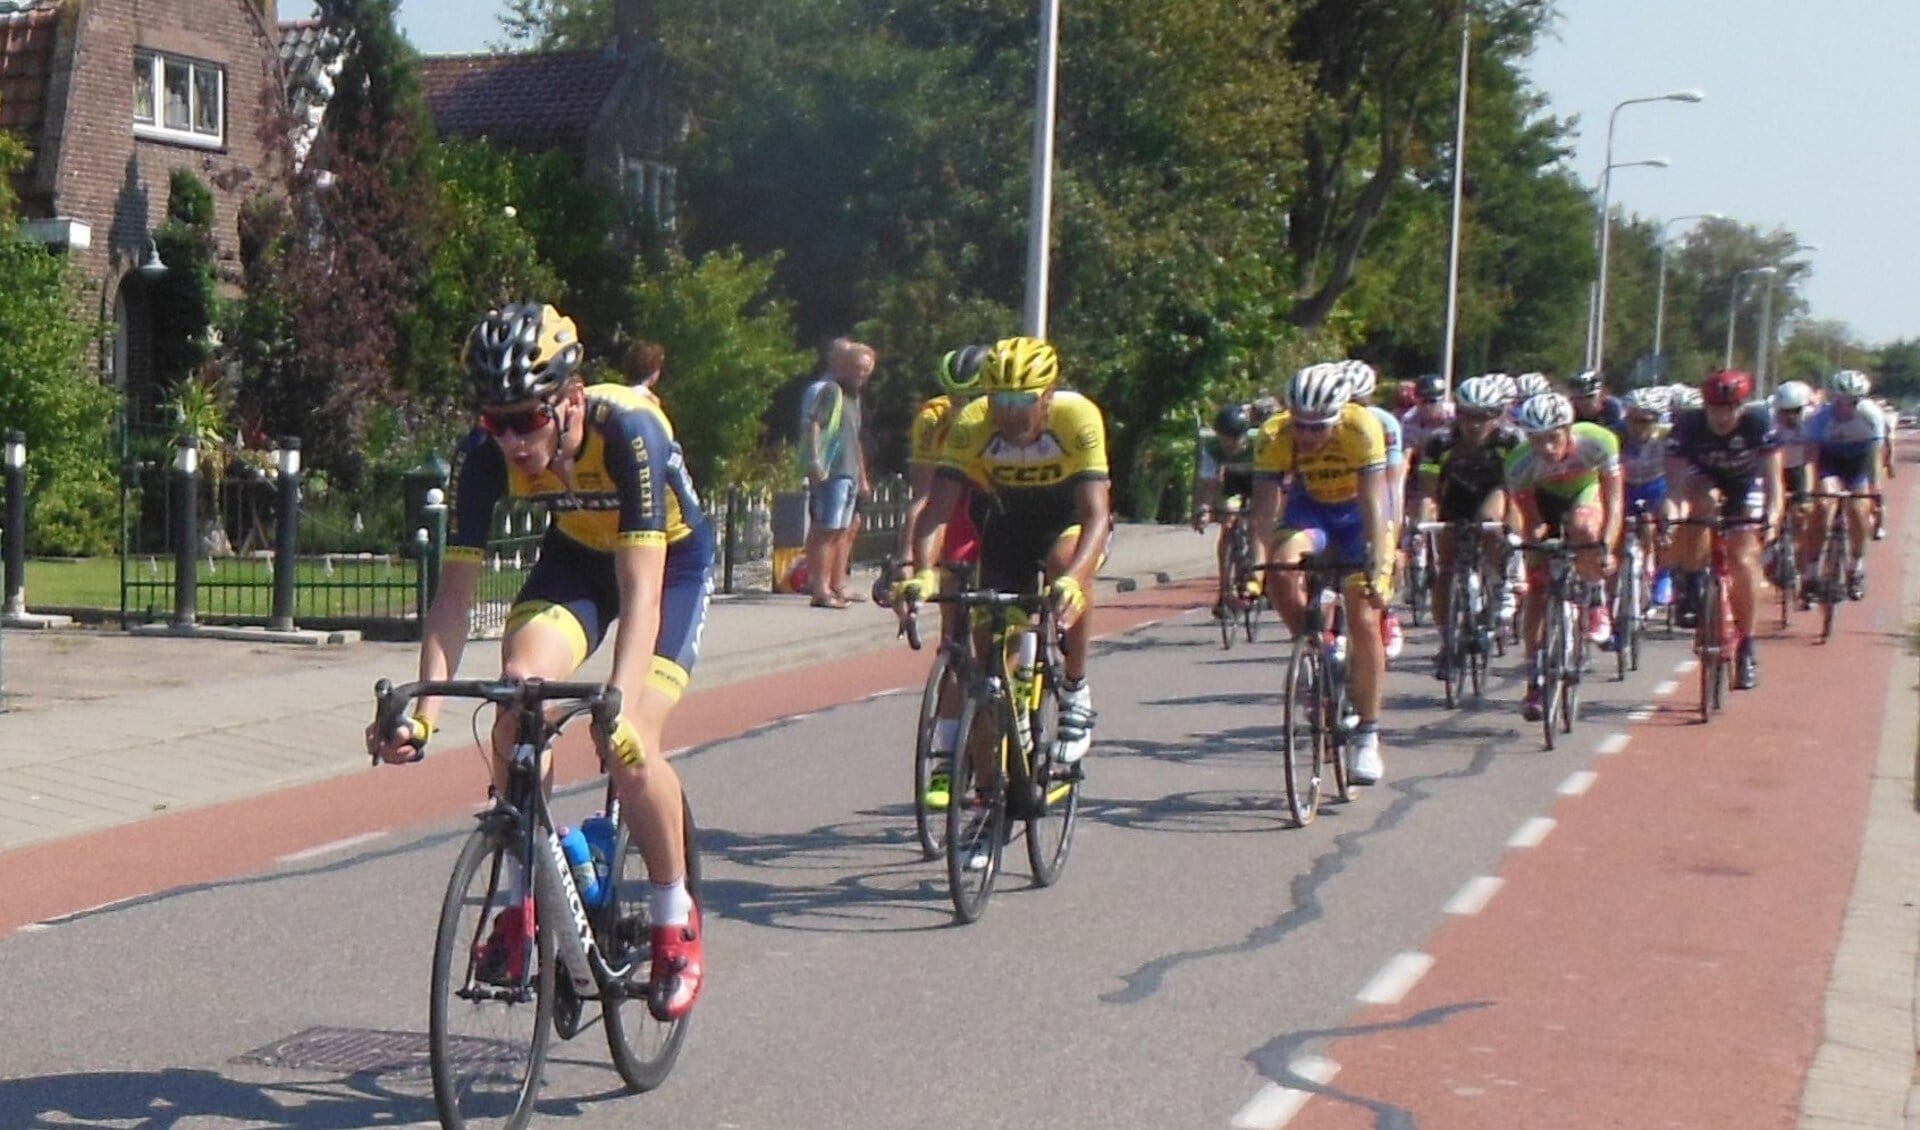 Jordi Talen, het peloton aanvoerend in de Ronde van Zuidland, zal tijdens de koppeltijdrit in Abbenbroek een koppel vormen met Wilco Kelderman. Foto: Dan Rolandus.